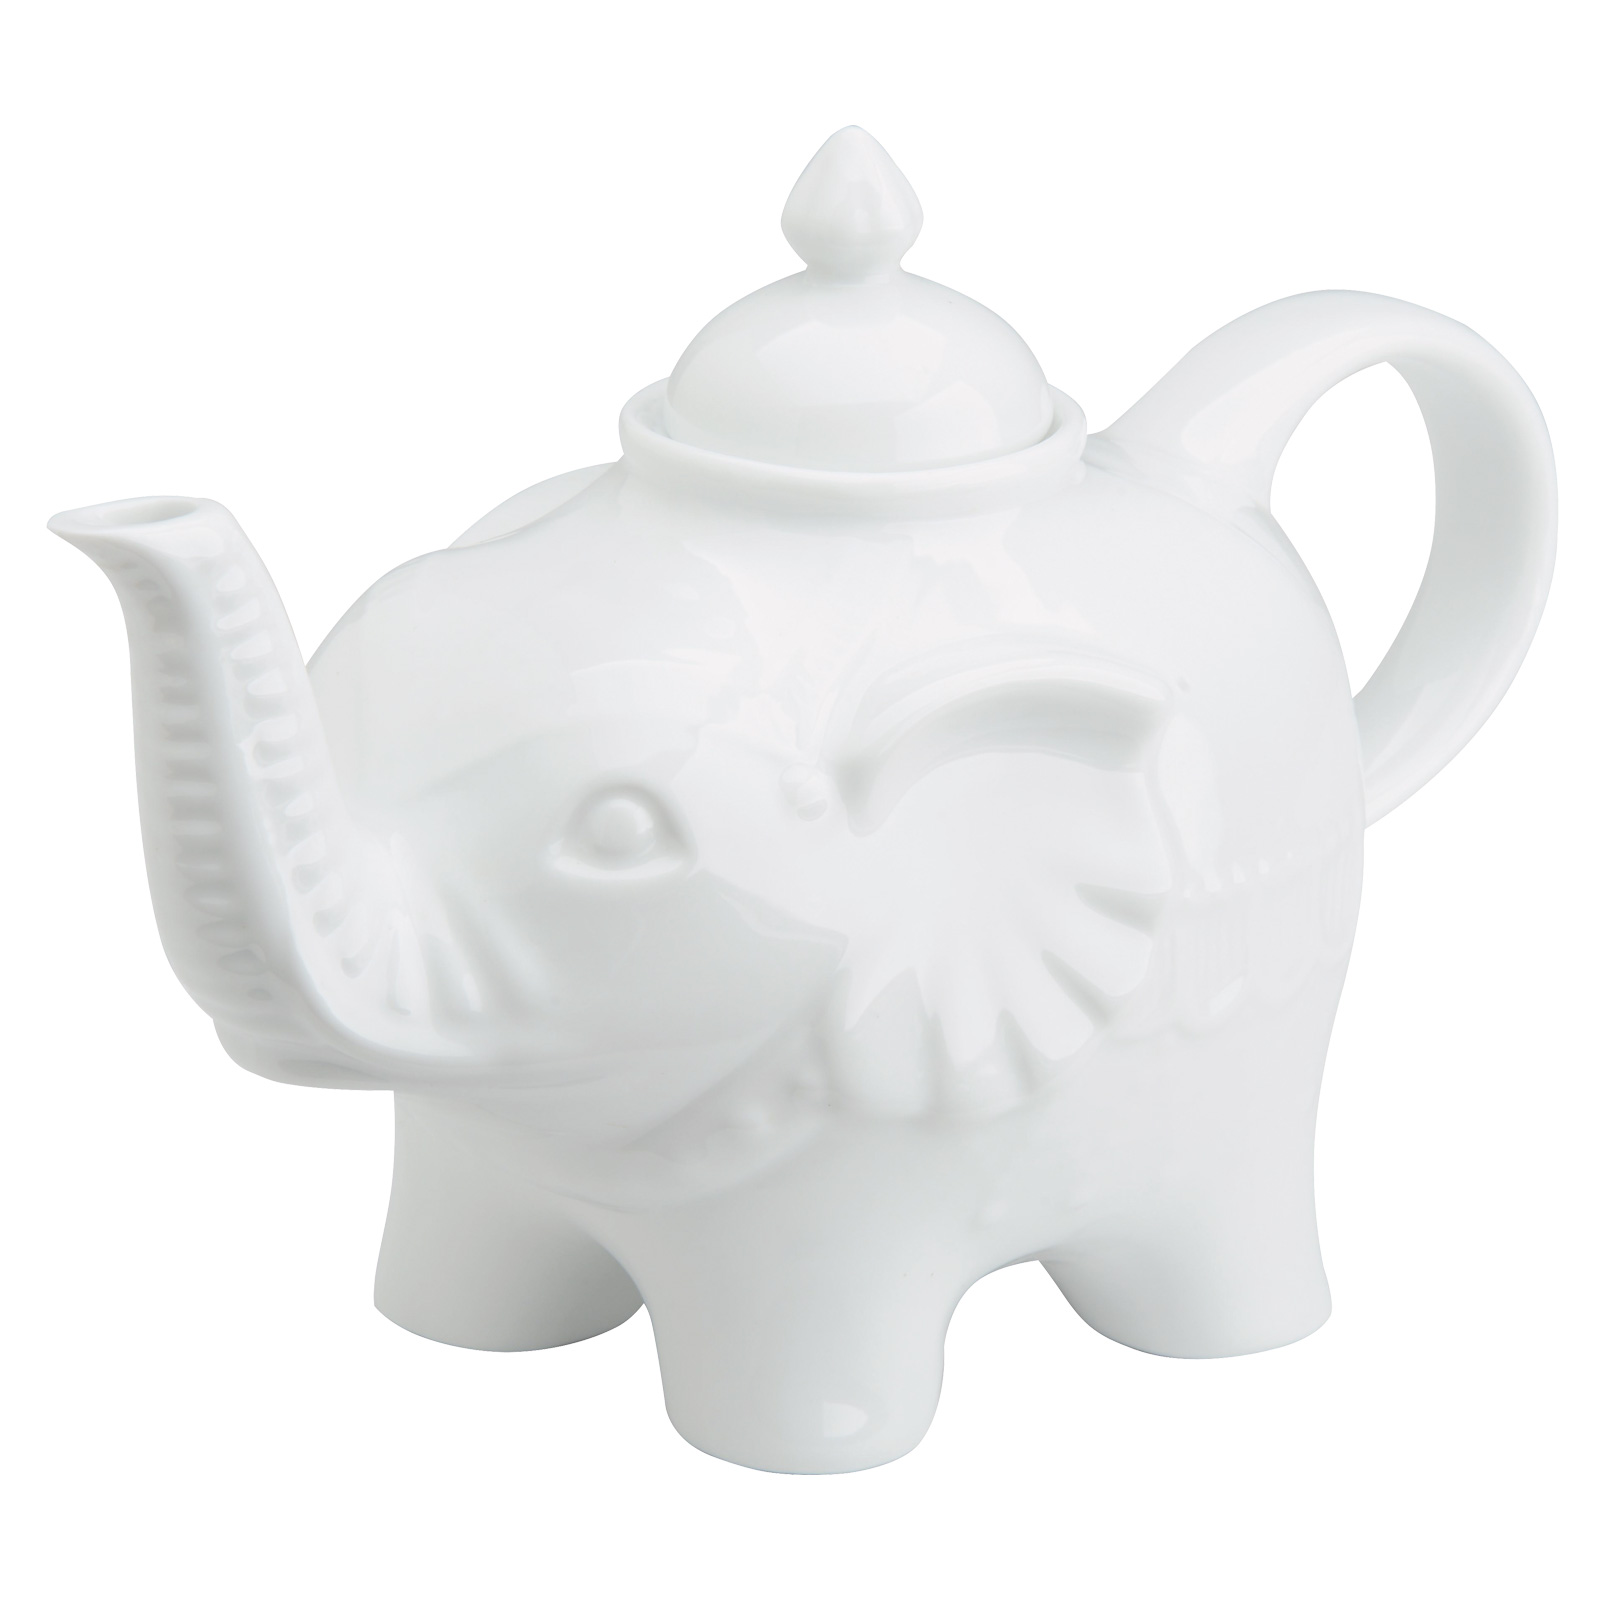 Elephant Teapot White